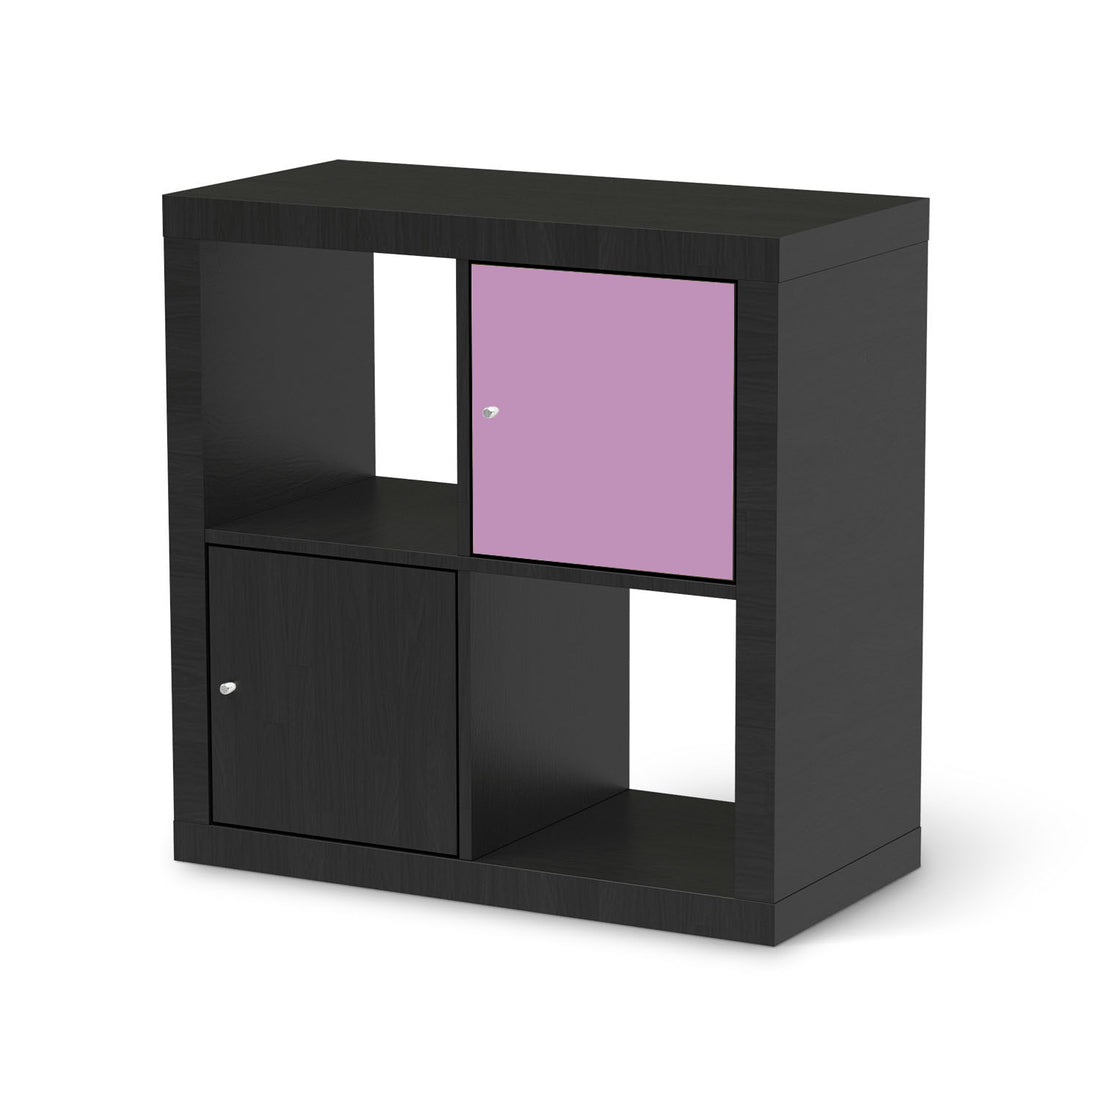 Selbstklebende Folie Flieder Light - IKEA Kallax Regal 1 Türe - schwarz